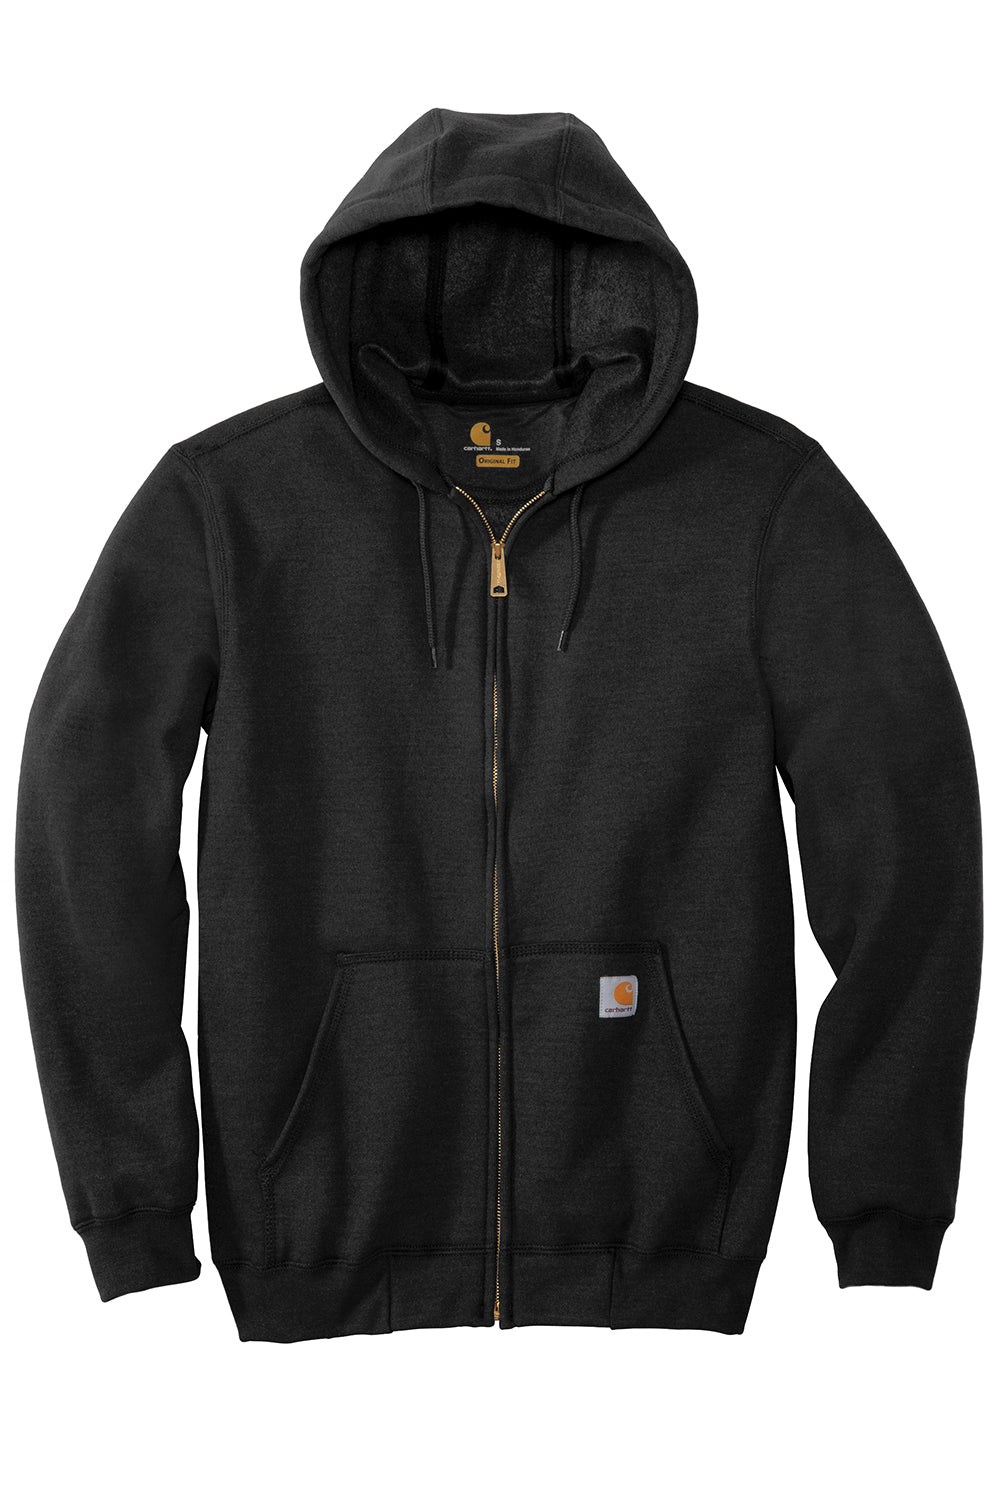 Carhartt CTK122 Mens Full Zip Hooded Sweatshirt Hoodie Black Flat Front